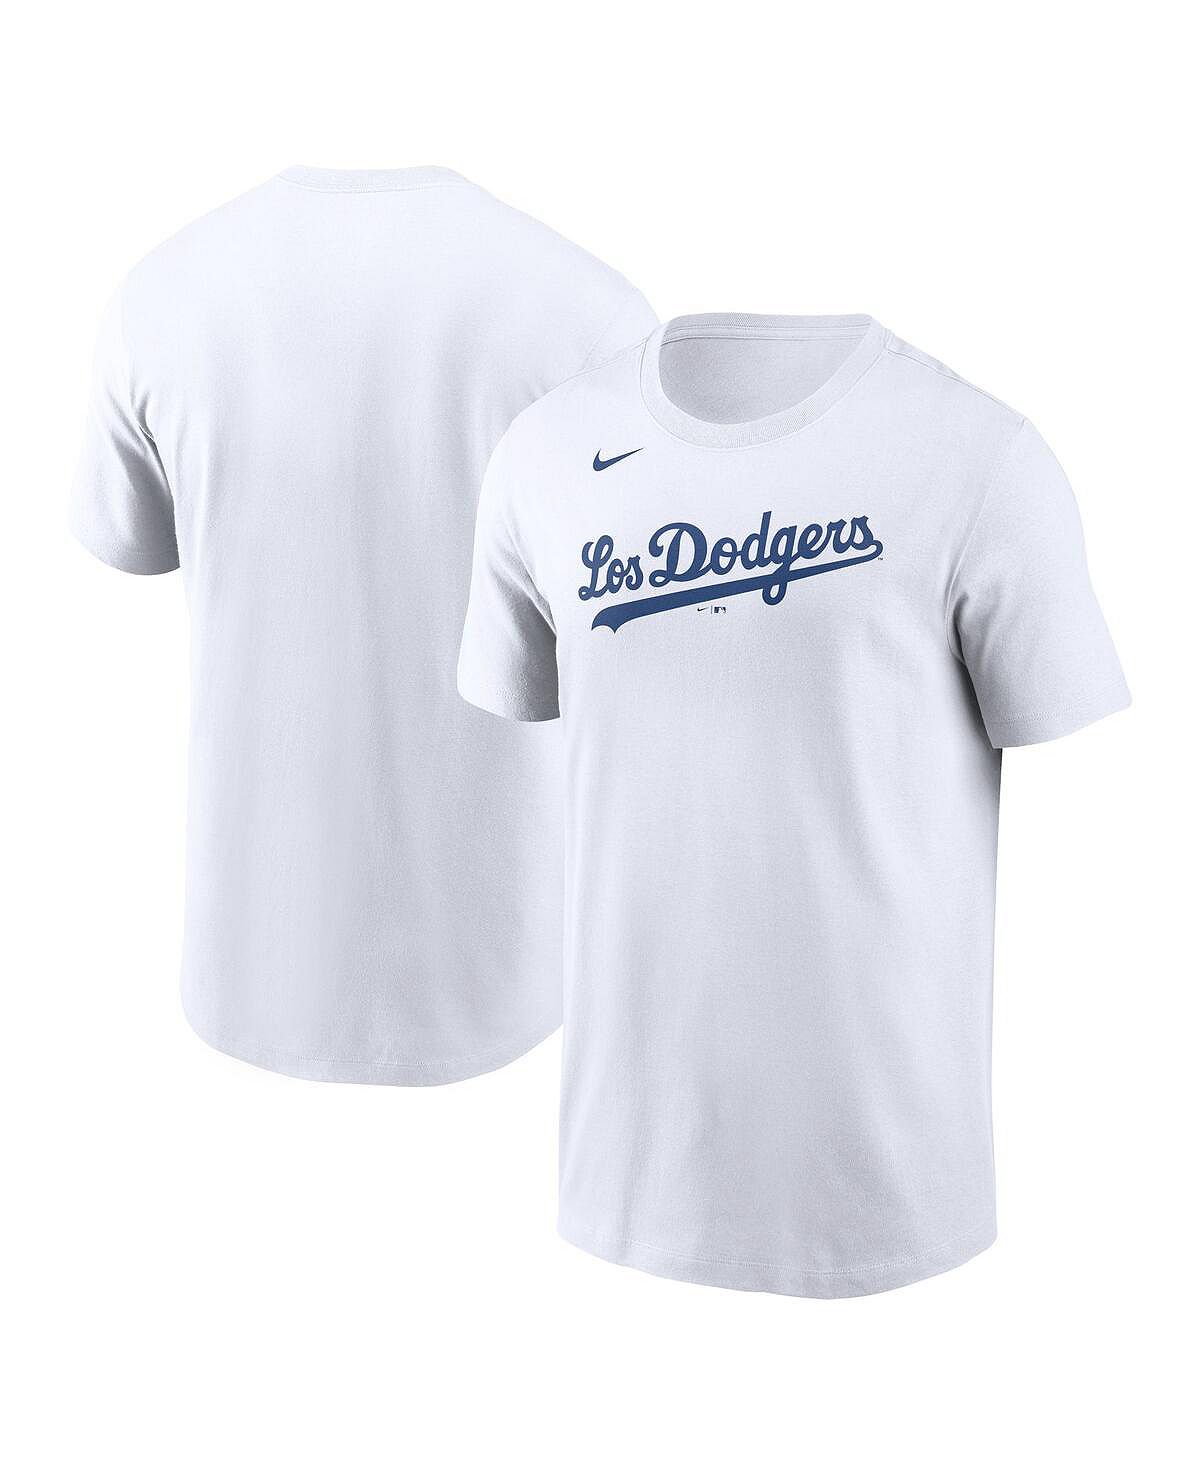 Мужская белая футболка los angeles dodgers team city connect с надписью Nike, белый